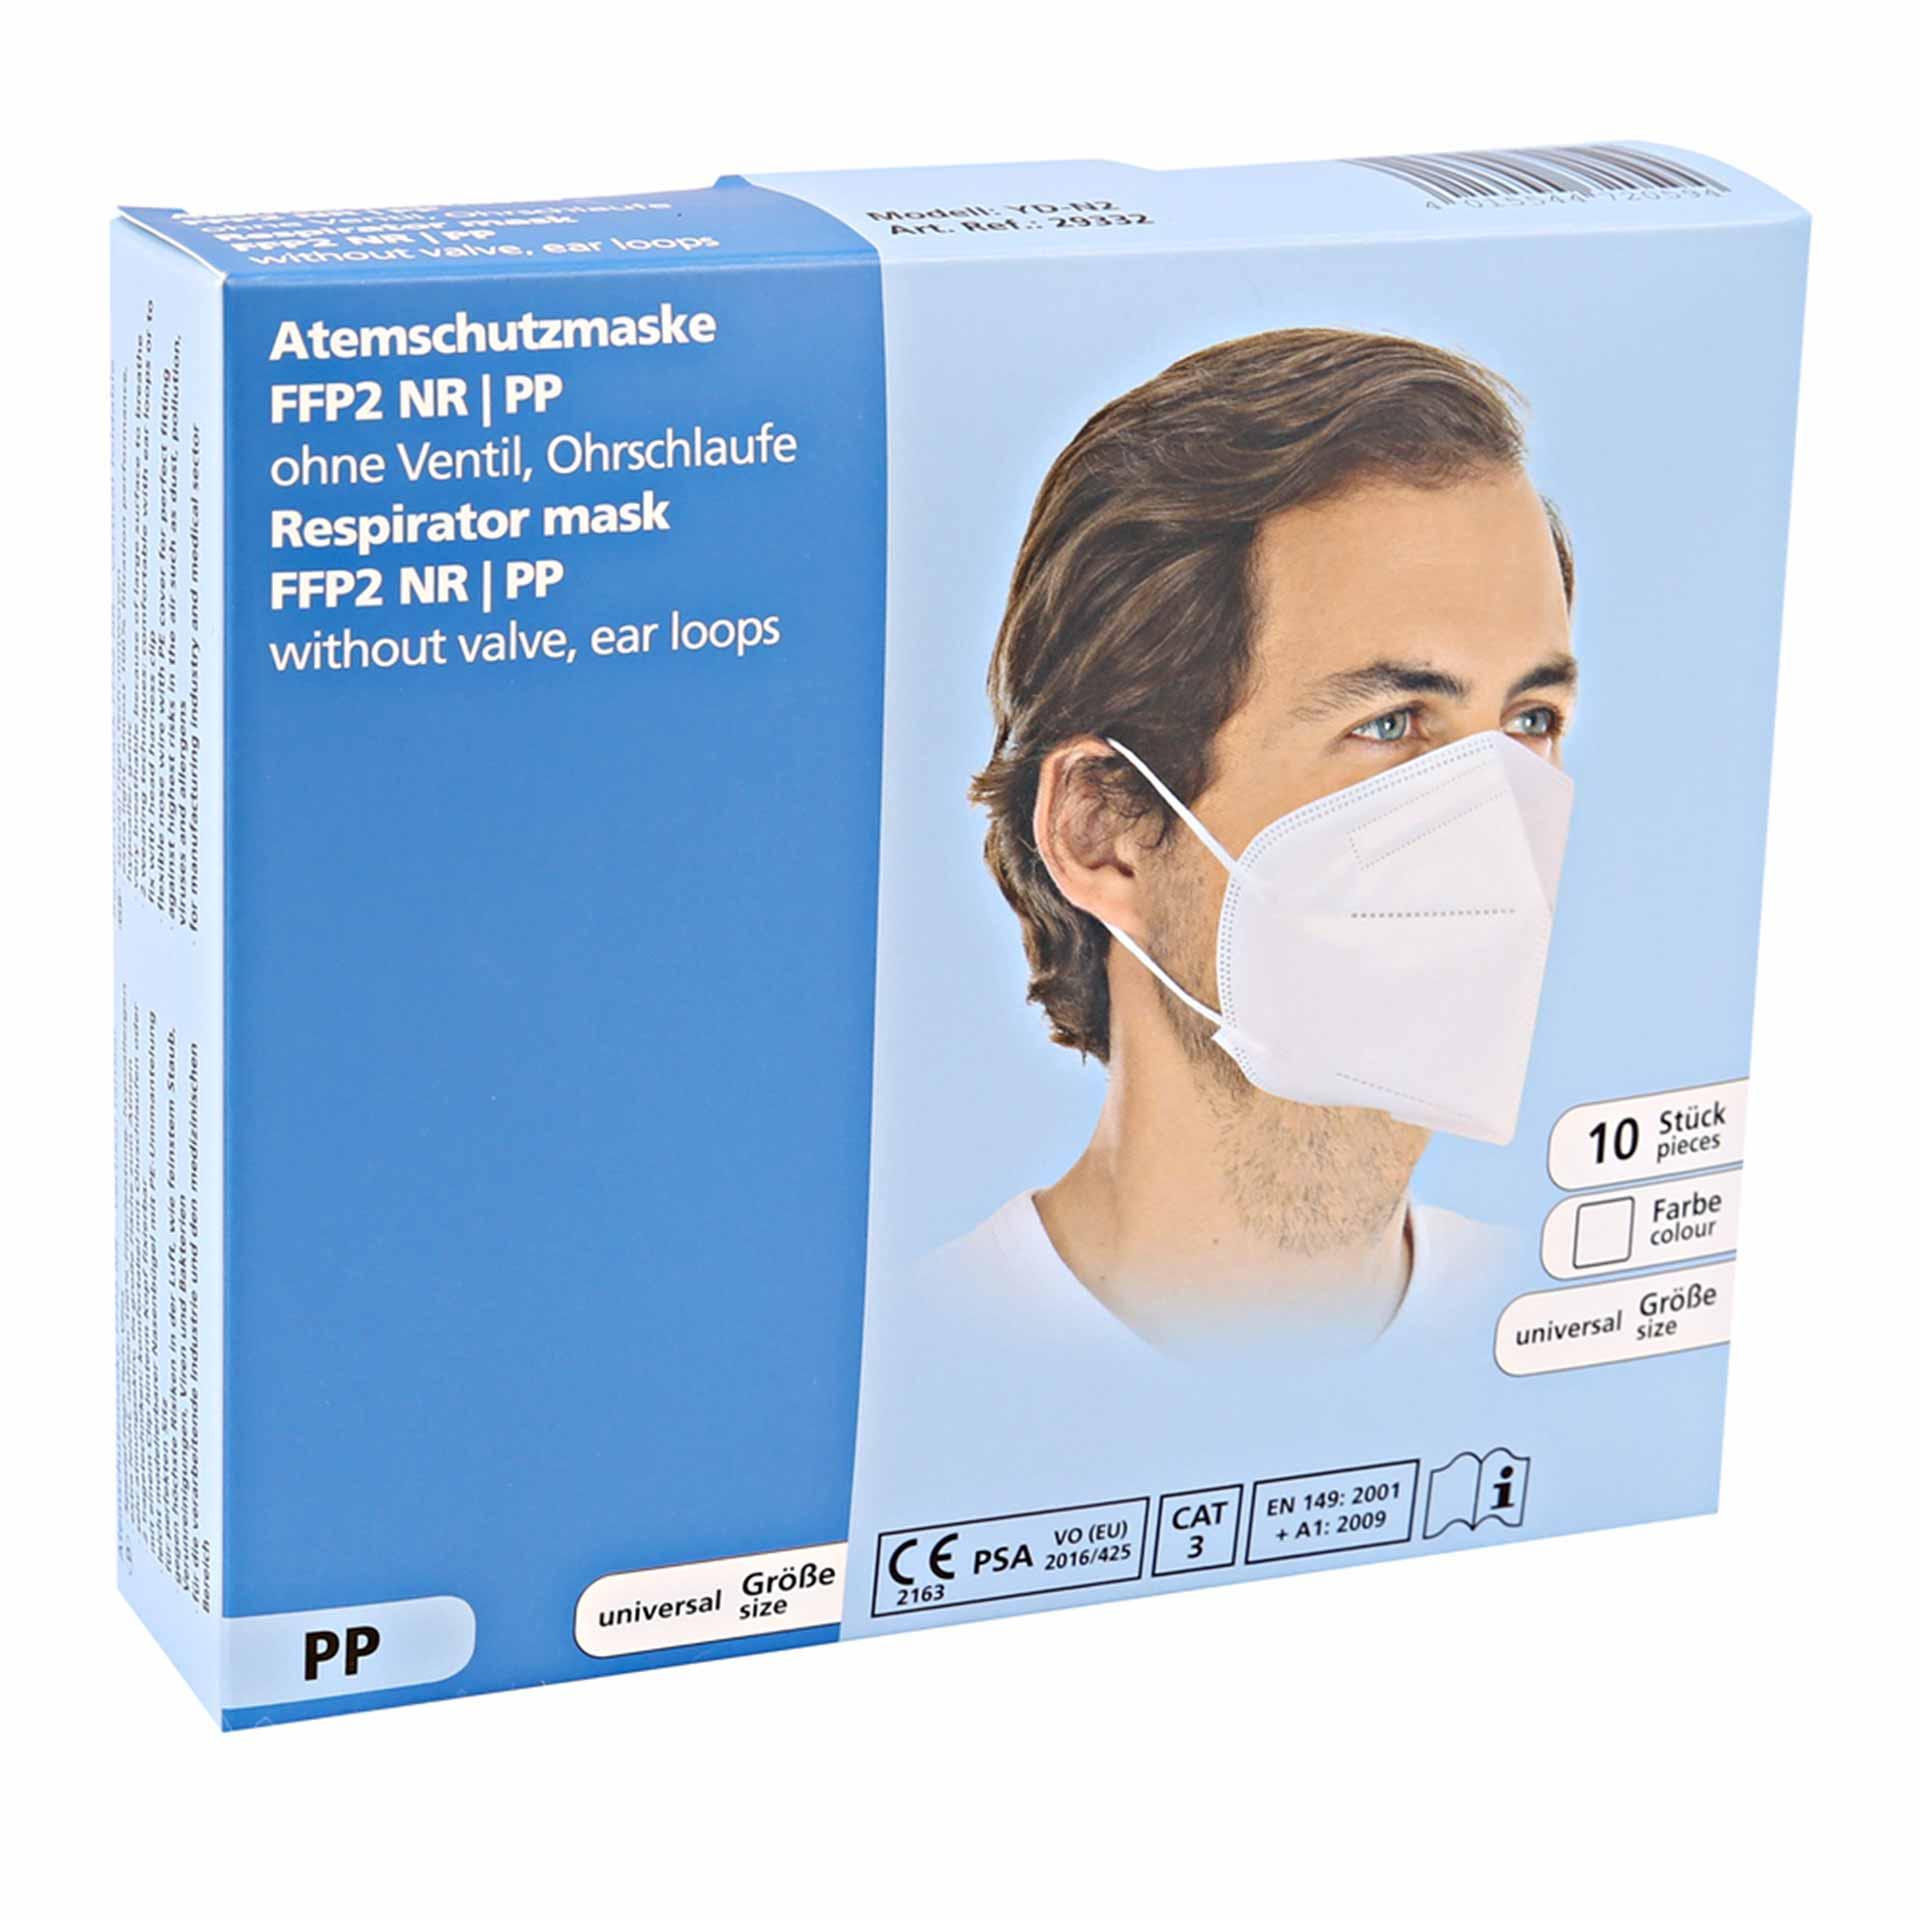 Atemschutzmaske FFP2 NR, ohne Ventil, Ohrschlaufen | PP, einzeln verpackt